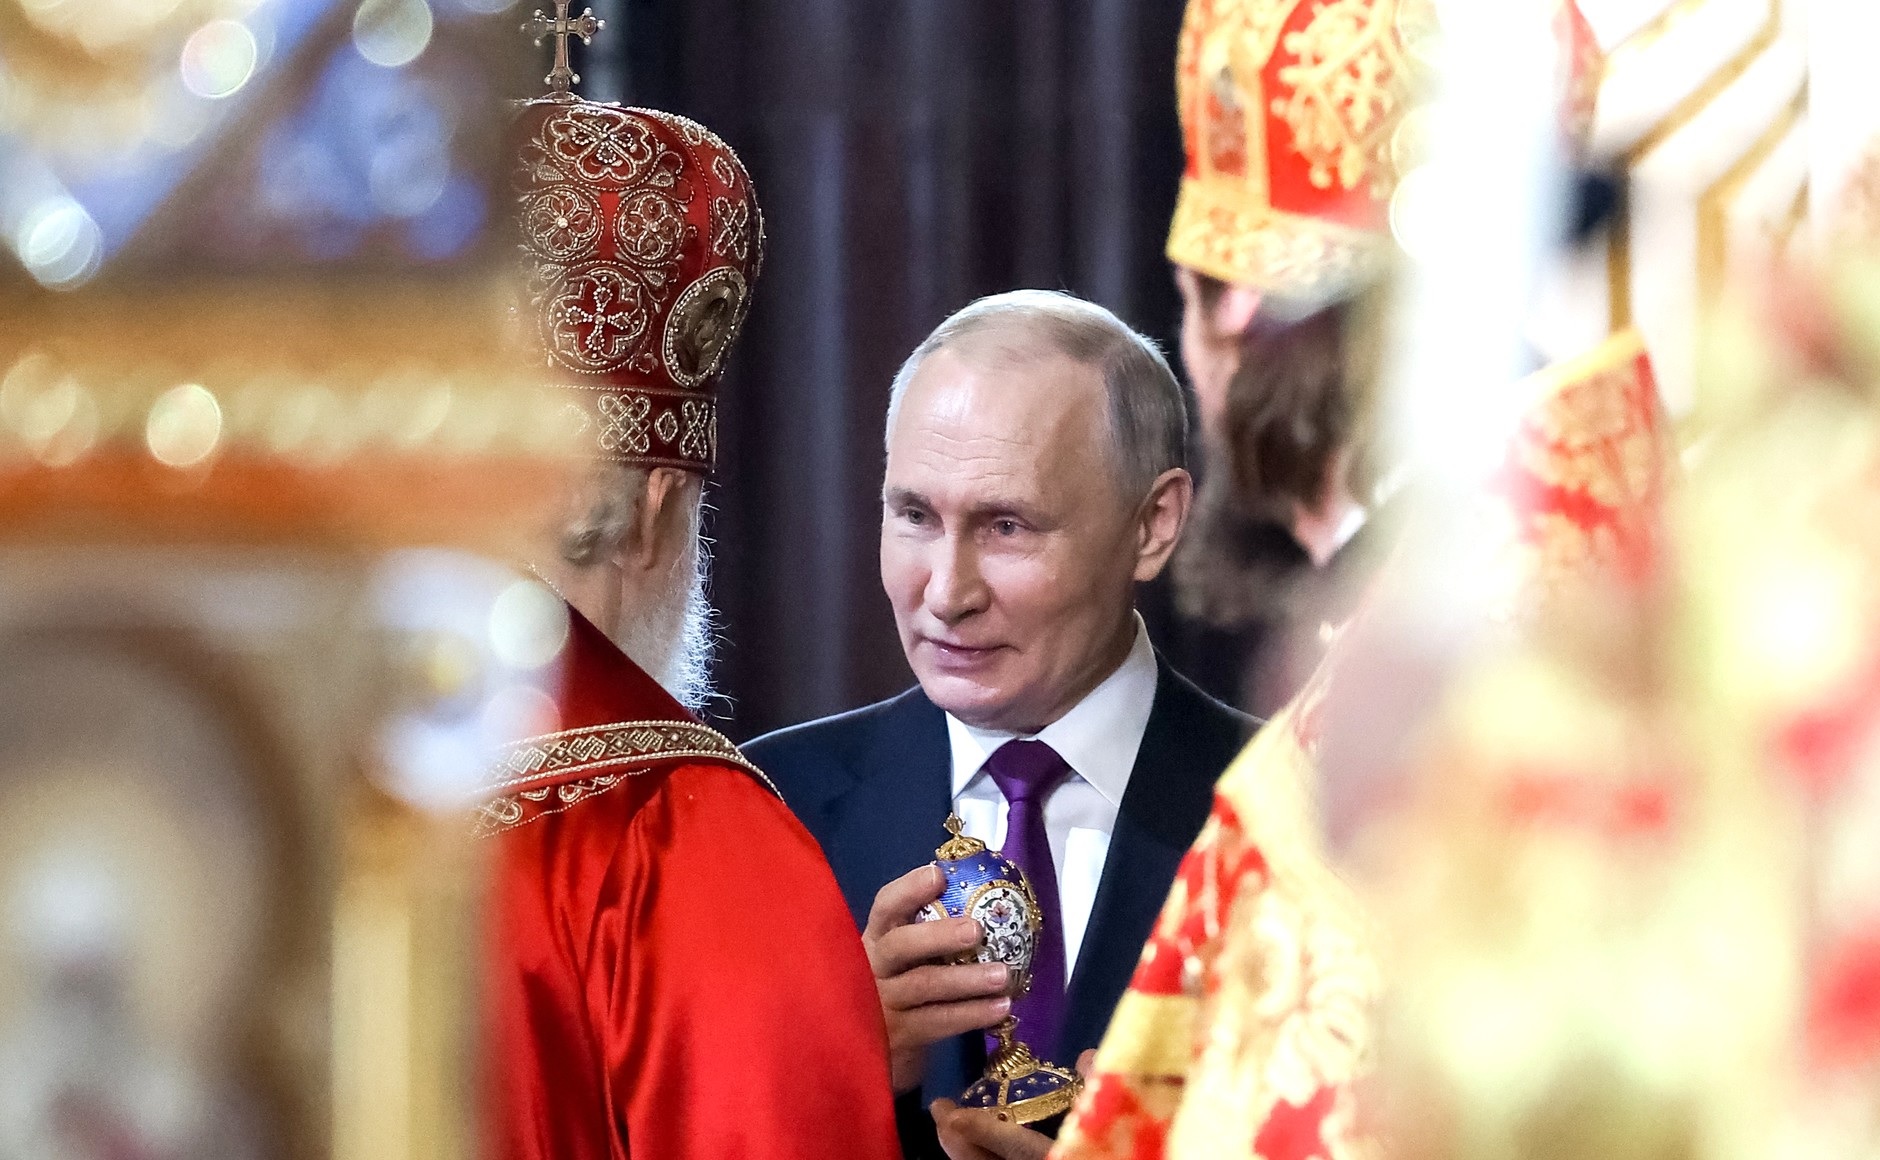 Патриарх Кирилл заверил: Путин не отдает ему приказов